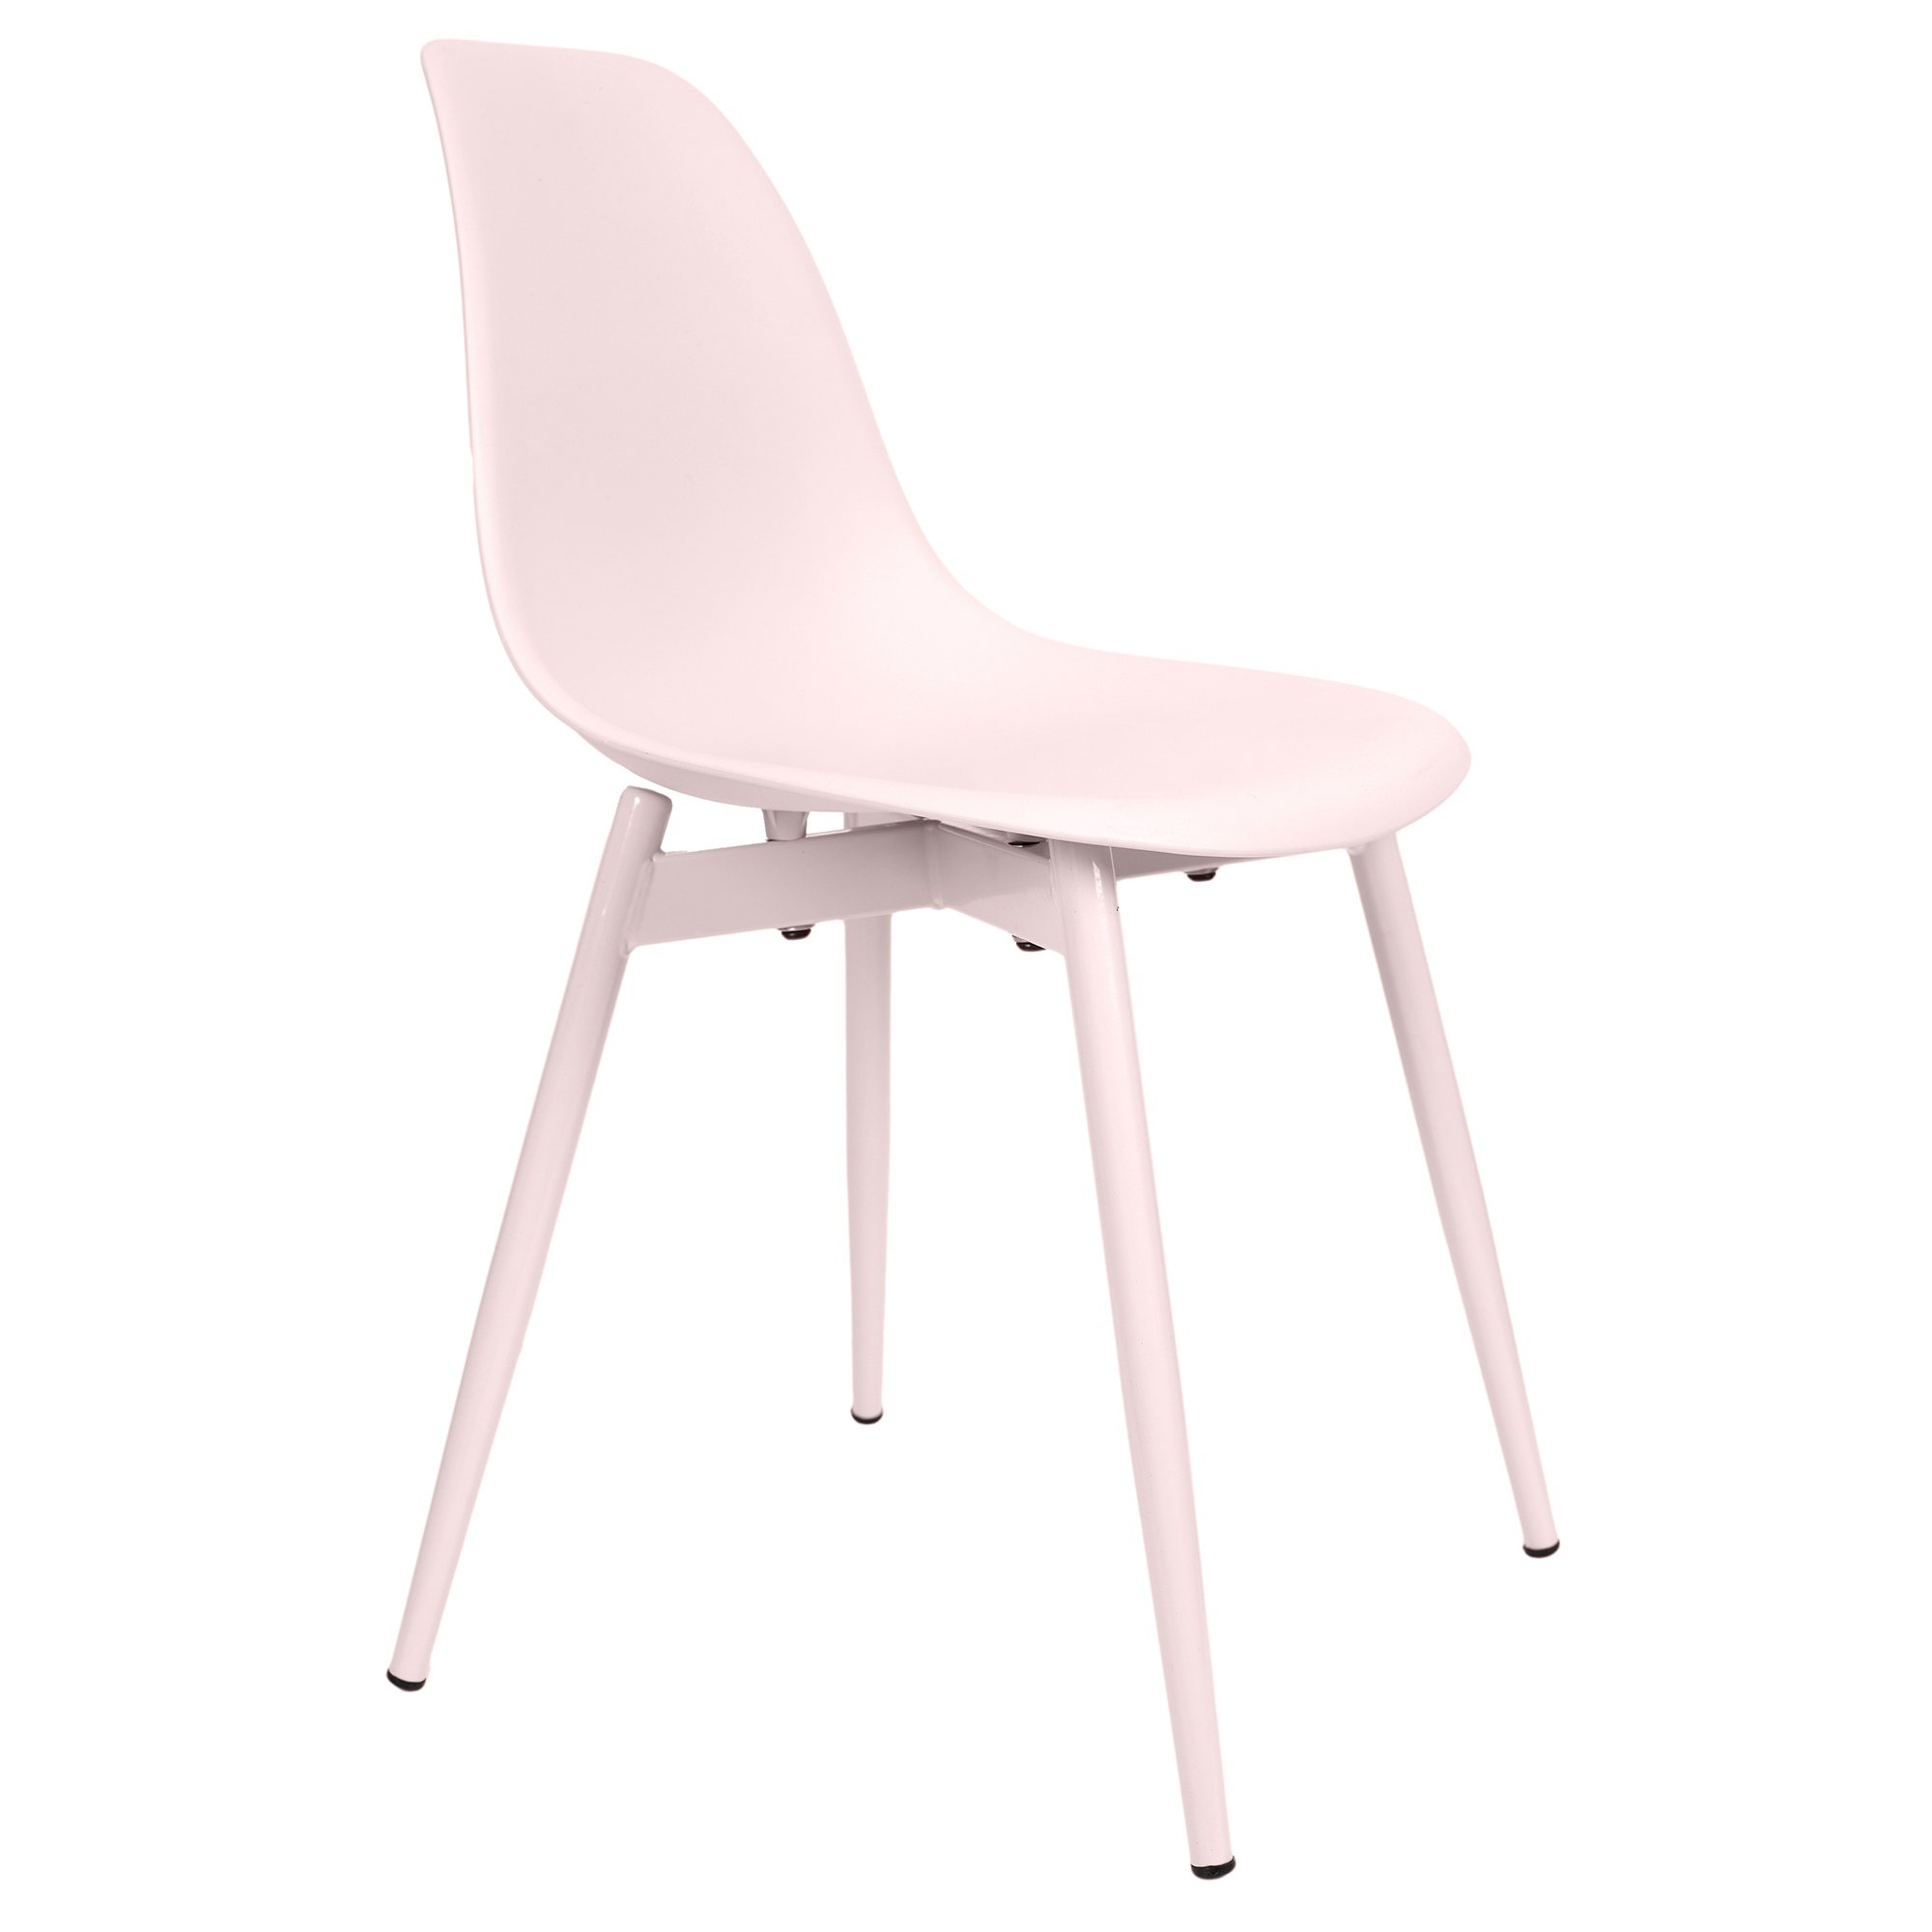 Lot de 2 chaises enfant 41x38x60 cm rose et blanc - LASTIK